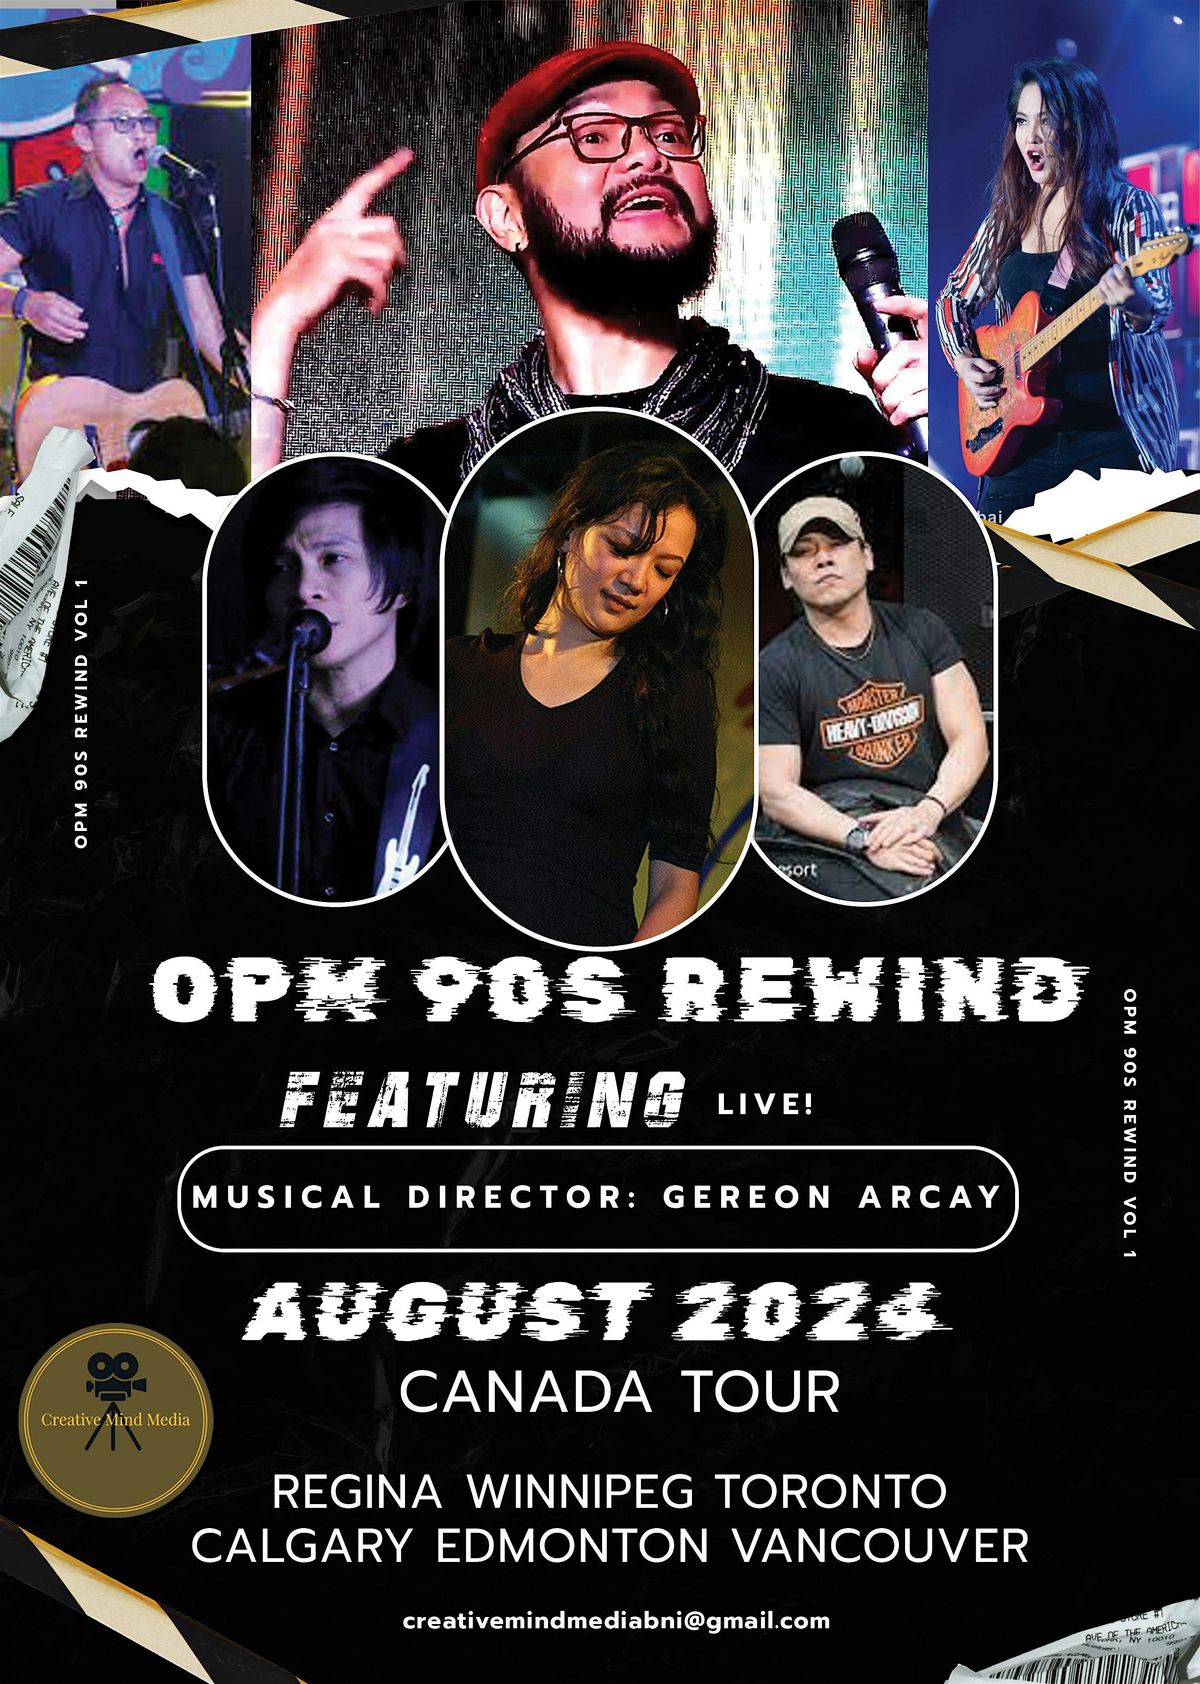 OPM 90s Rewind - Calgary